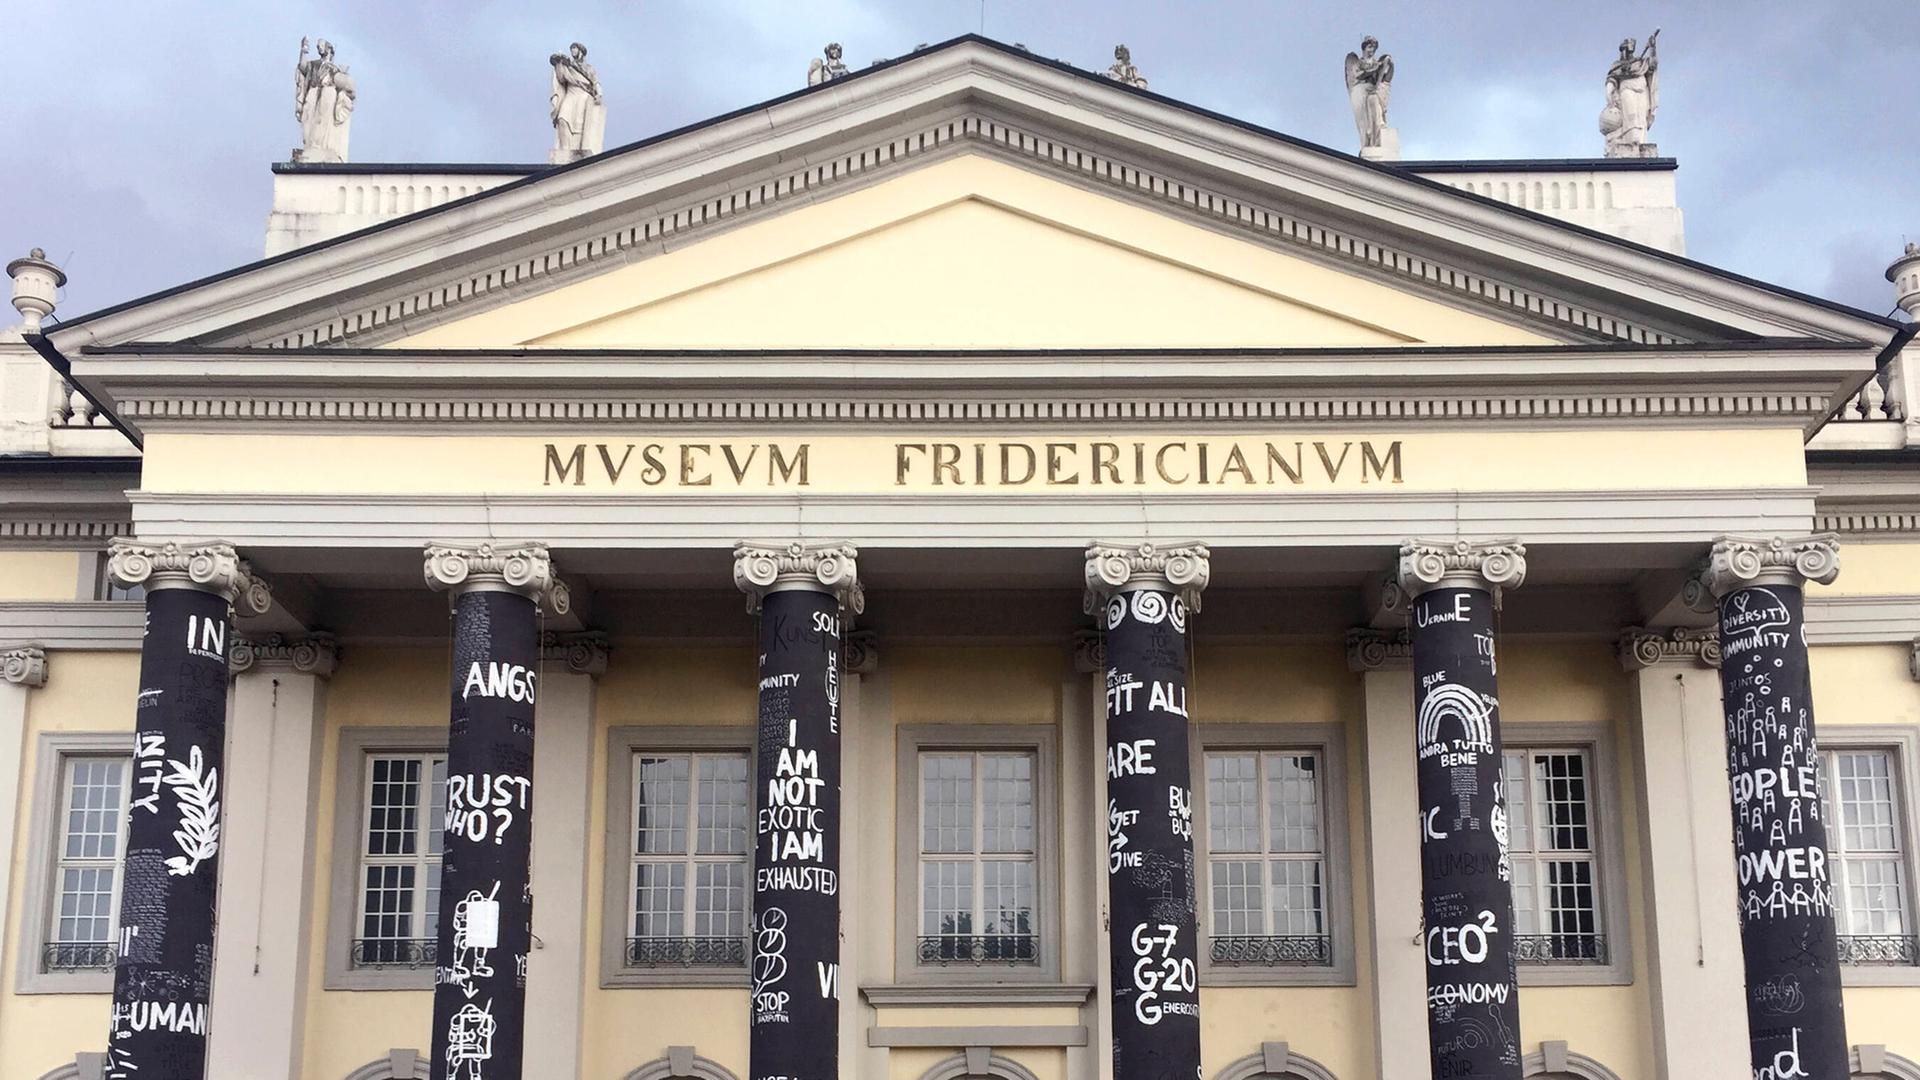 Der Eingang von dem Museum Fridericianum. 6 Eingangs-Säulen sind mit Plakaten geschmückt. Vor dem Eingang stehen viele Menschen.